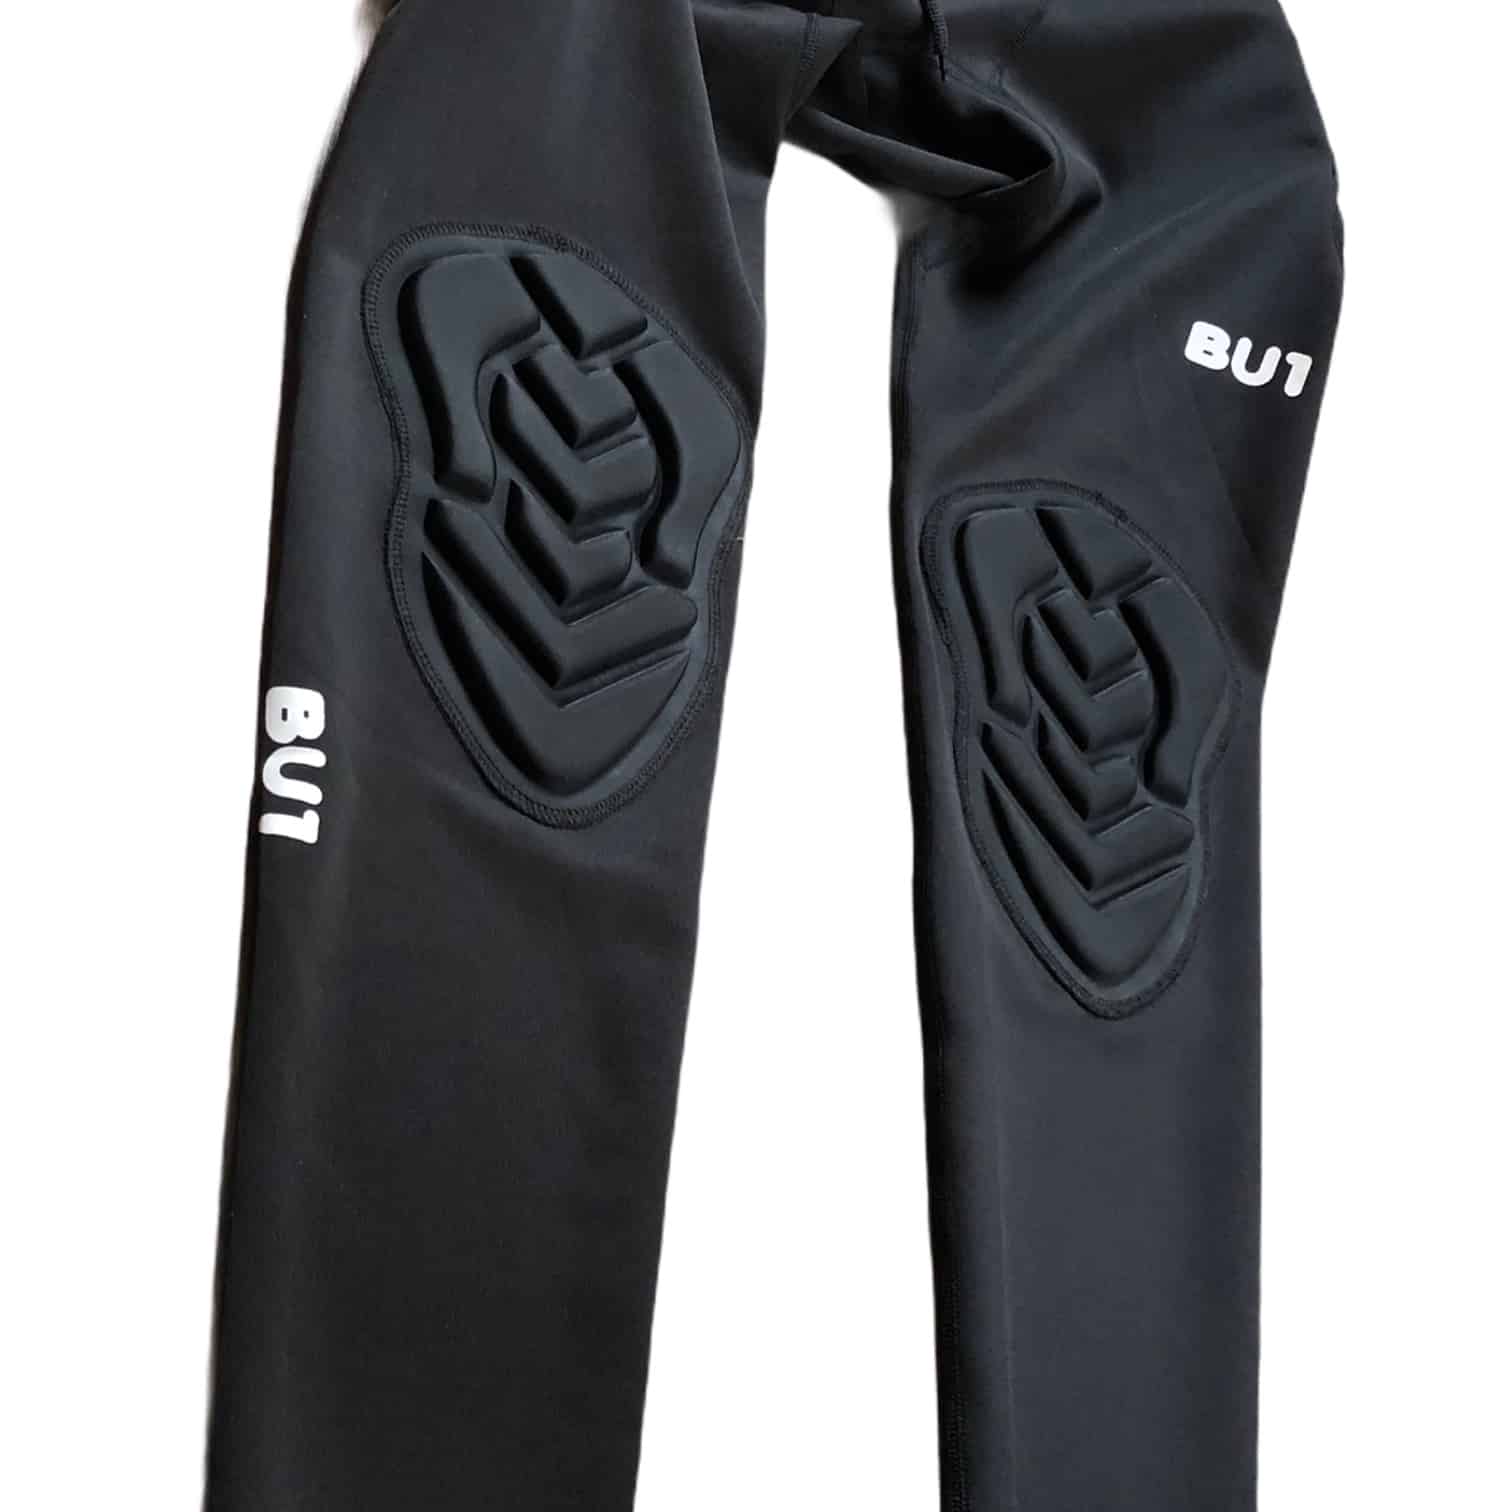 BU1 erősített leggings hosszú fekete